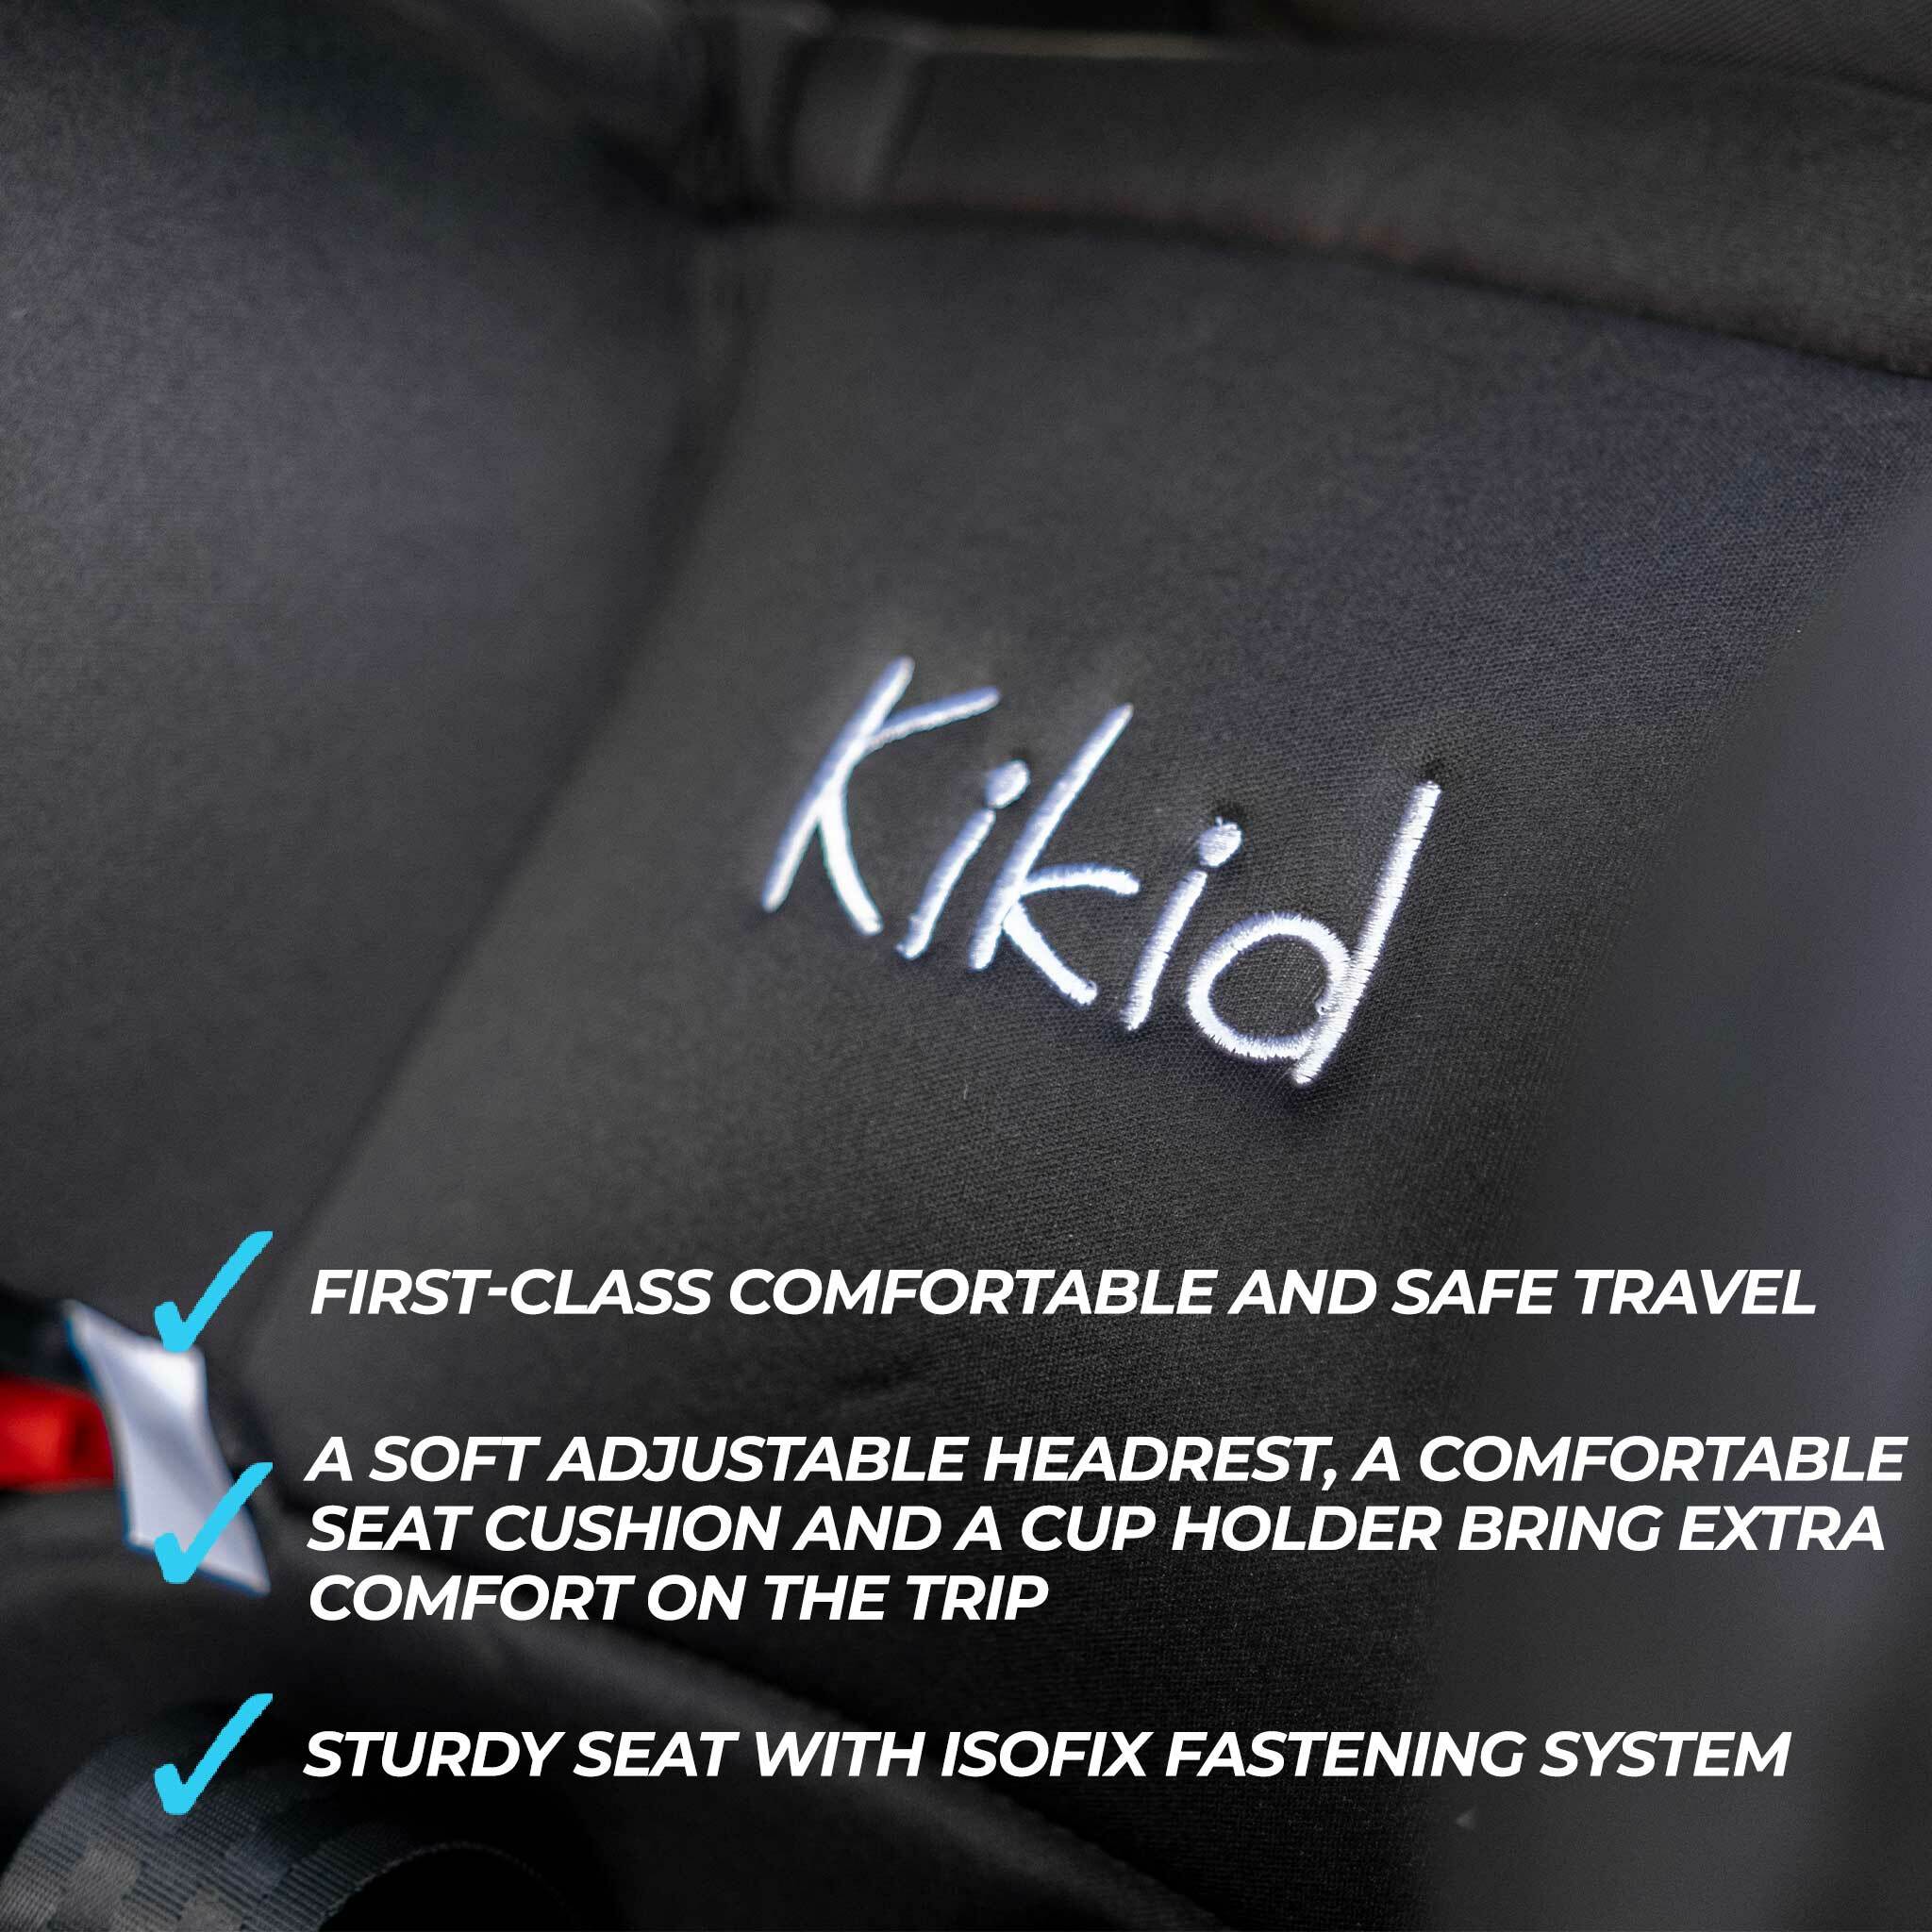 Kikid Kindersitz Premium, ISOFIX, 9-36 kg Black Edition - 169,00